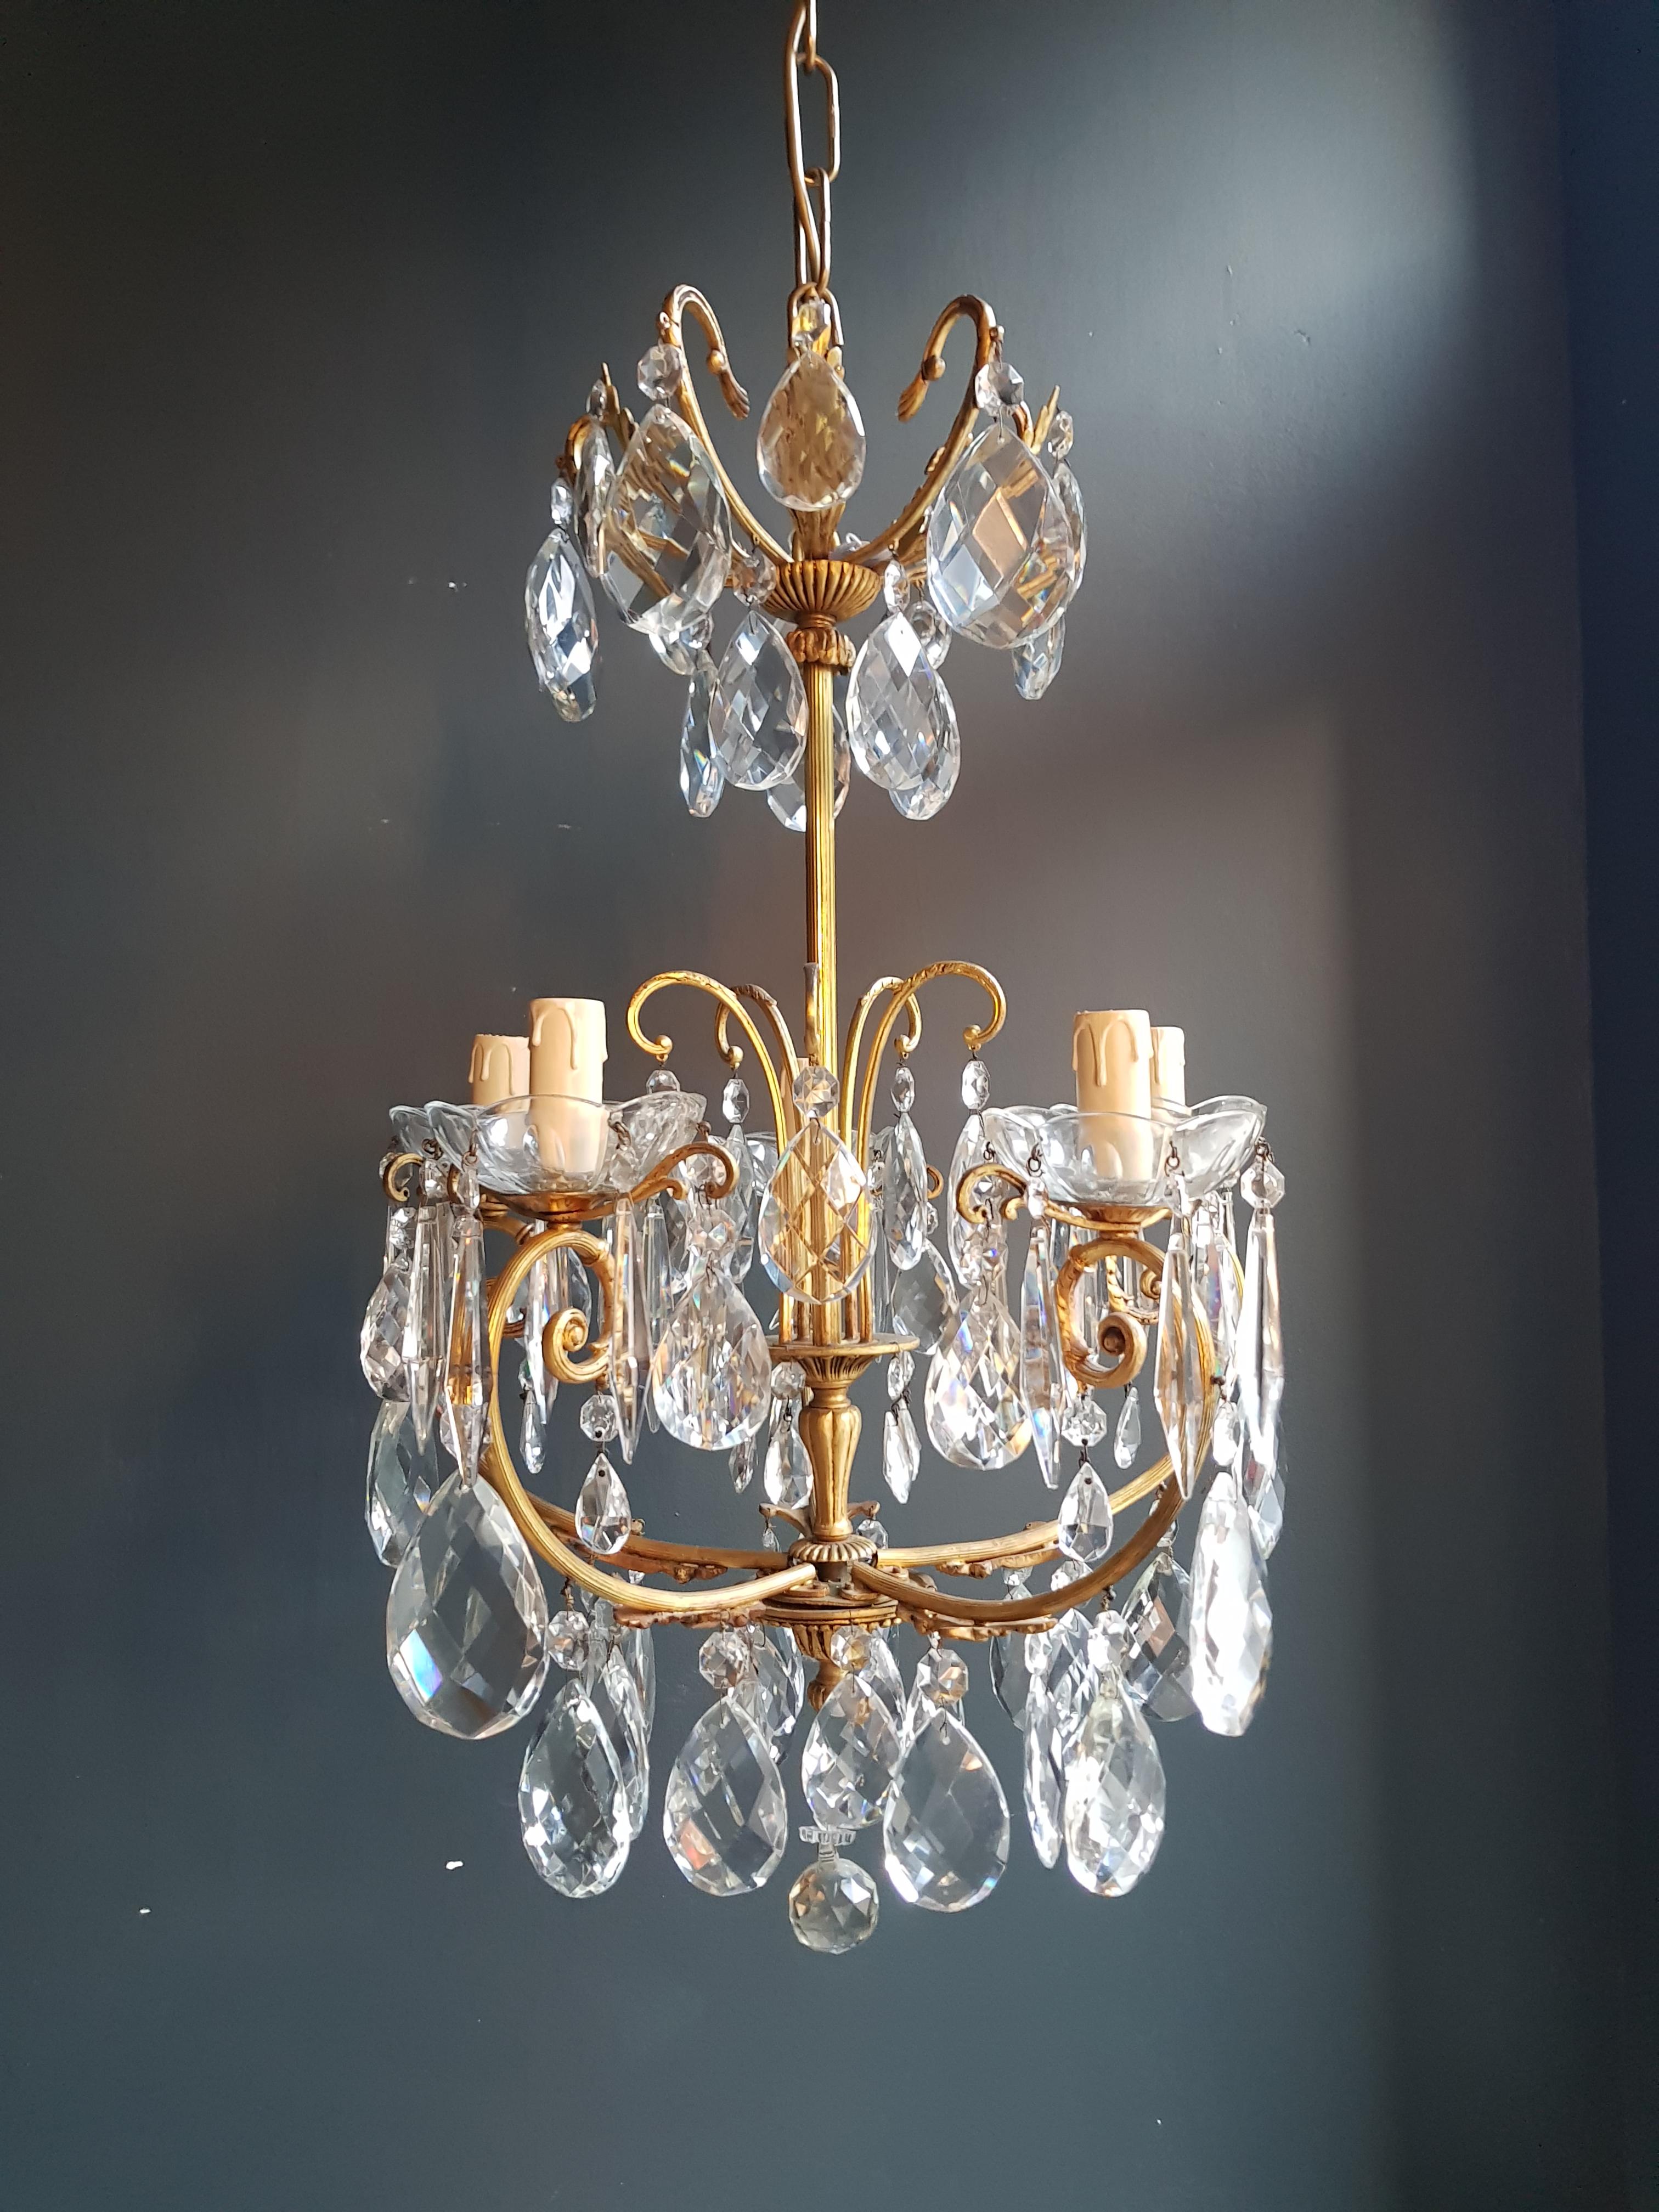 European Brass Cage Crystal Chandelier Antique Ceiling Lamp Lustre Art Nouveau